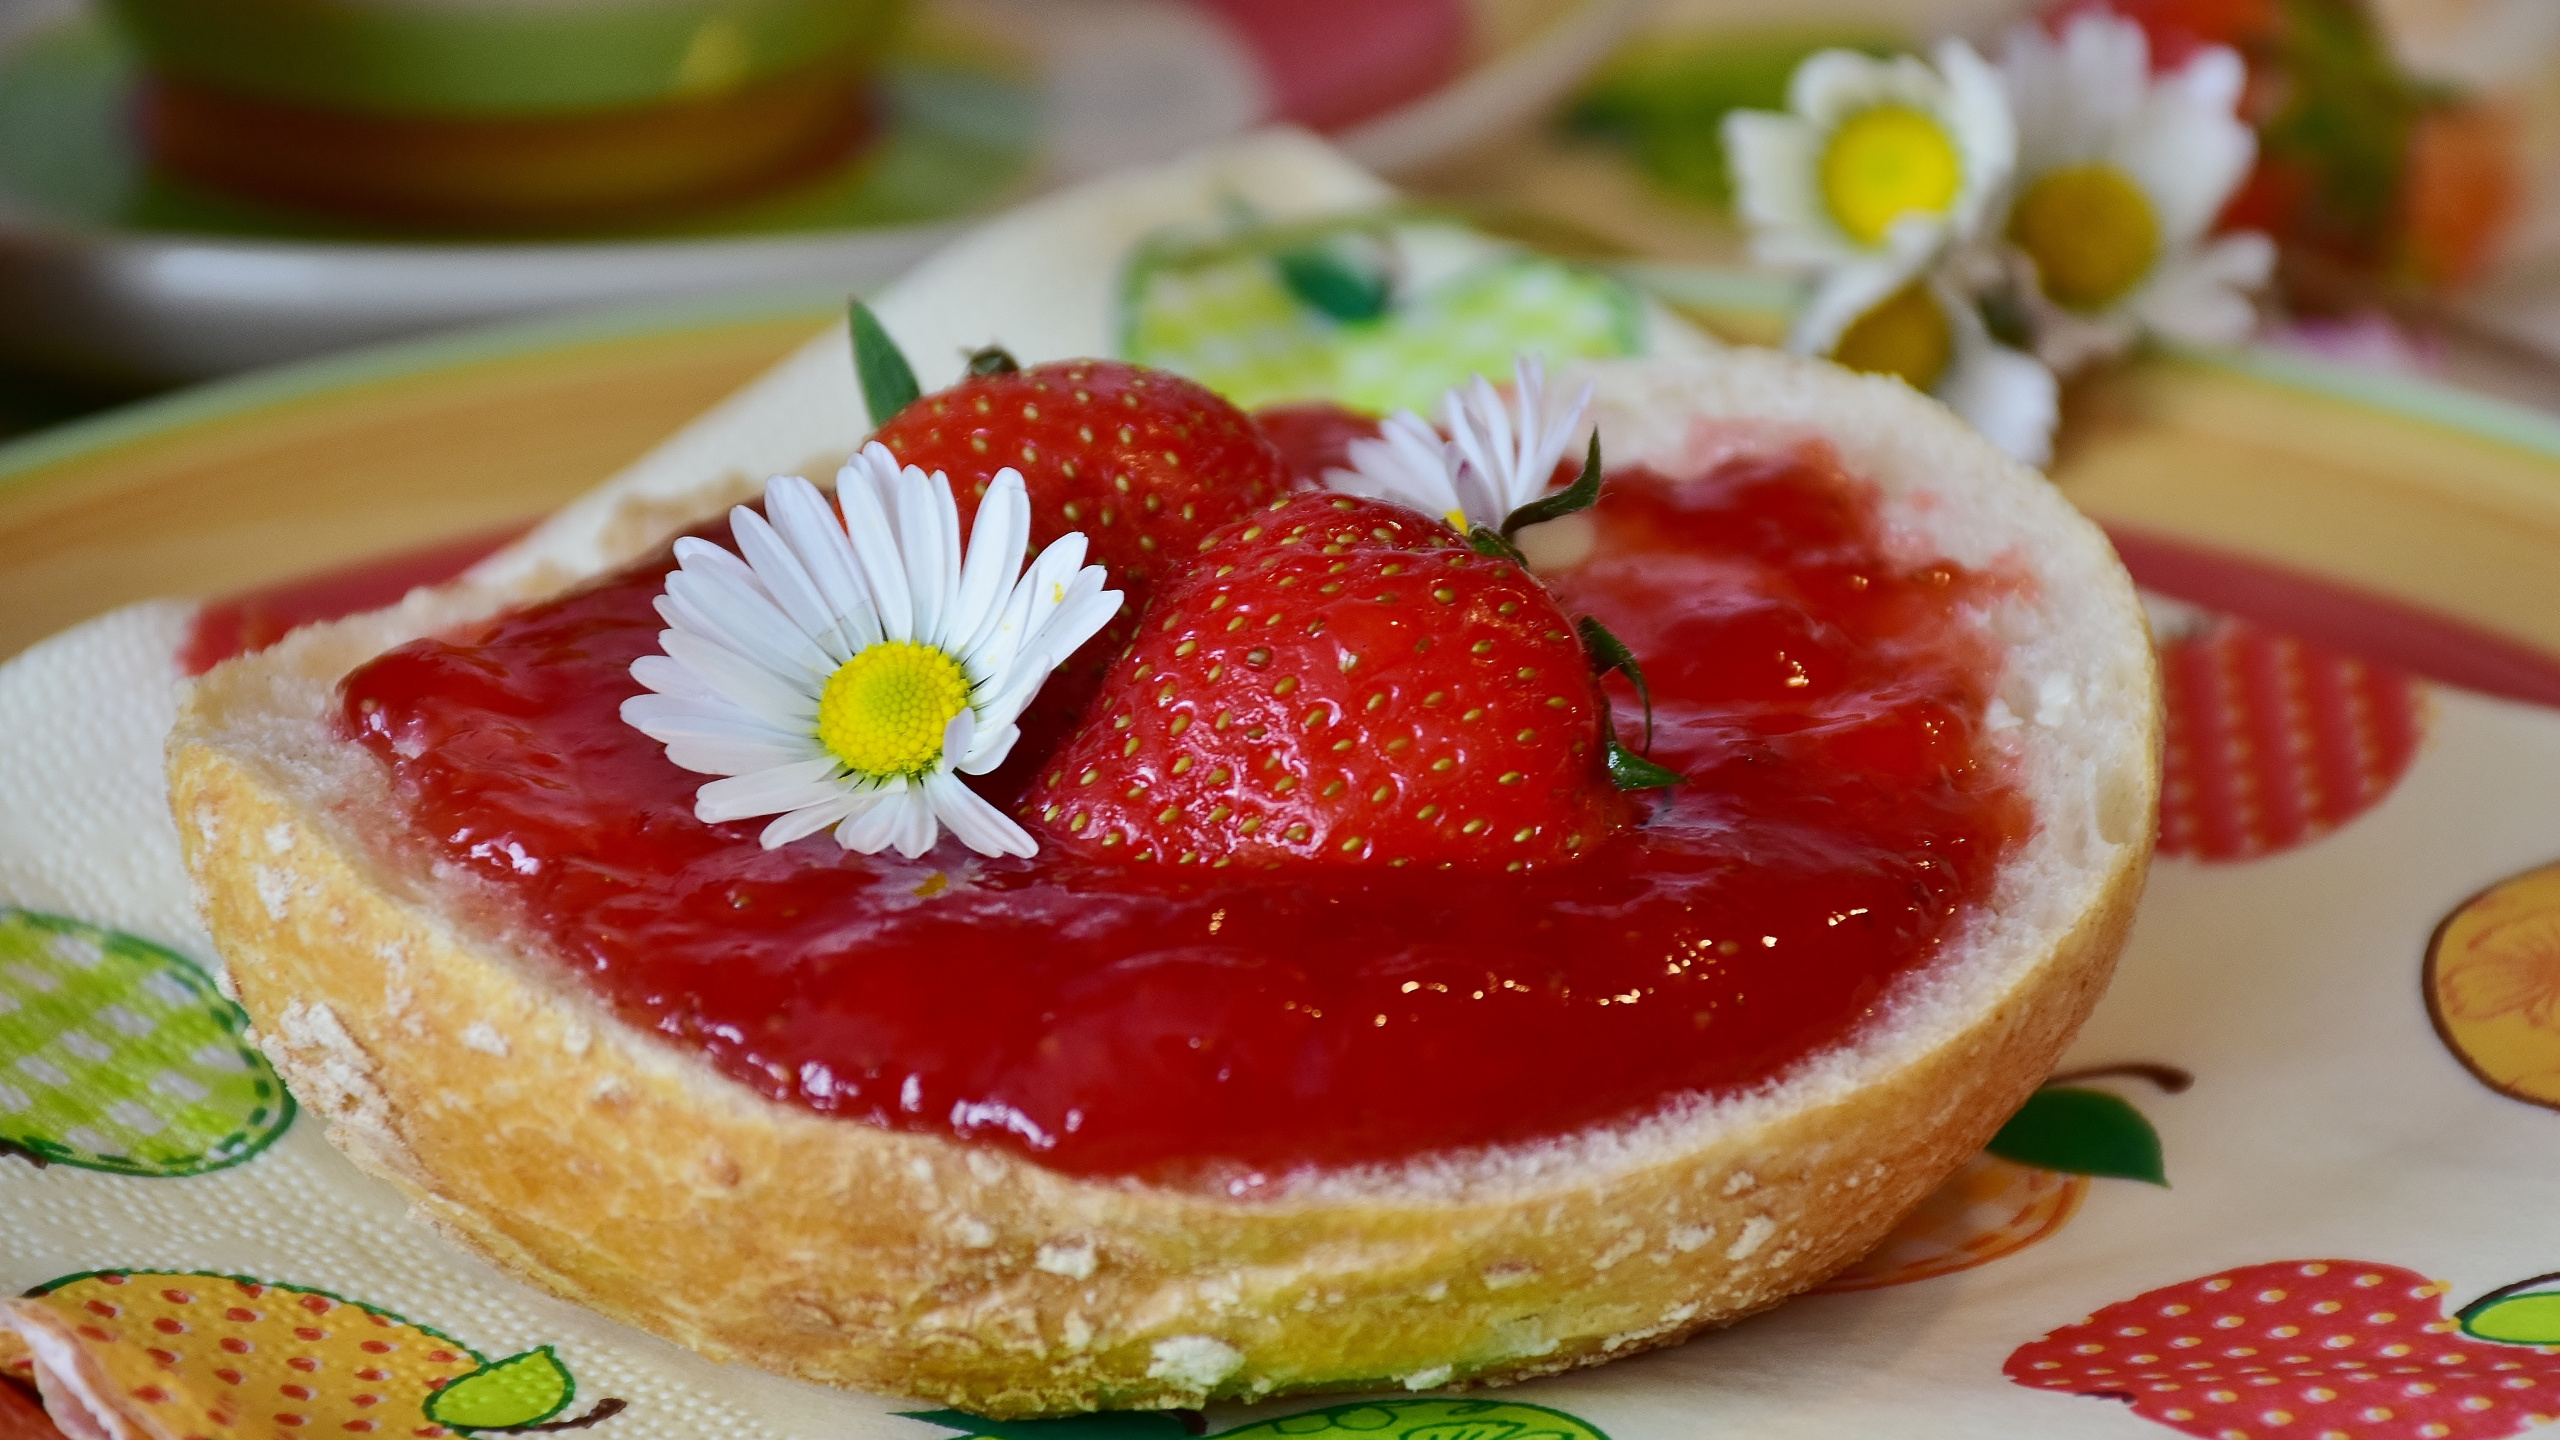 甜点, 食品, 成分, 甜头, 草莓 壁纸 2560x1440 允许